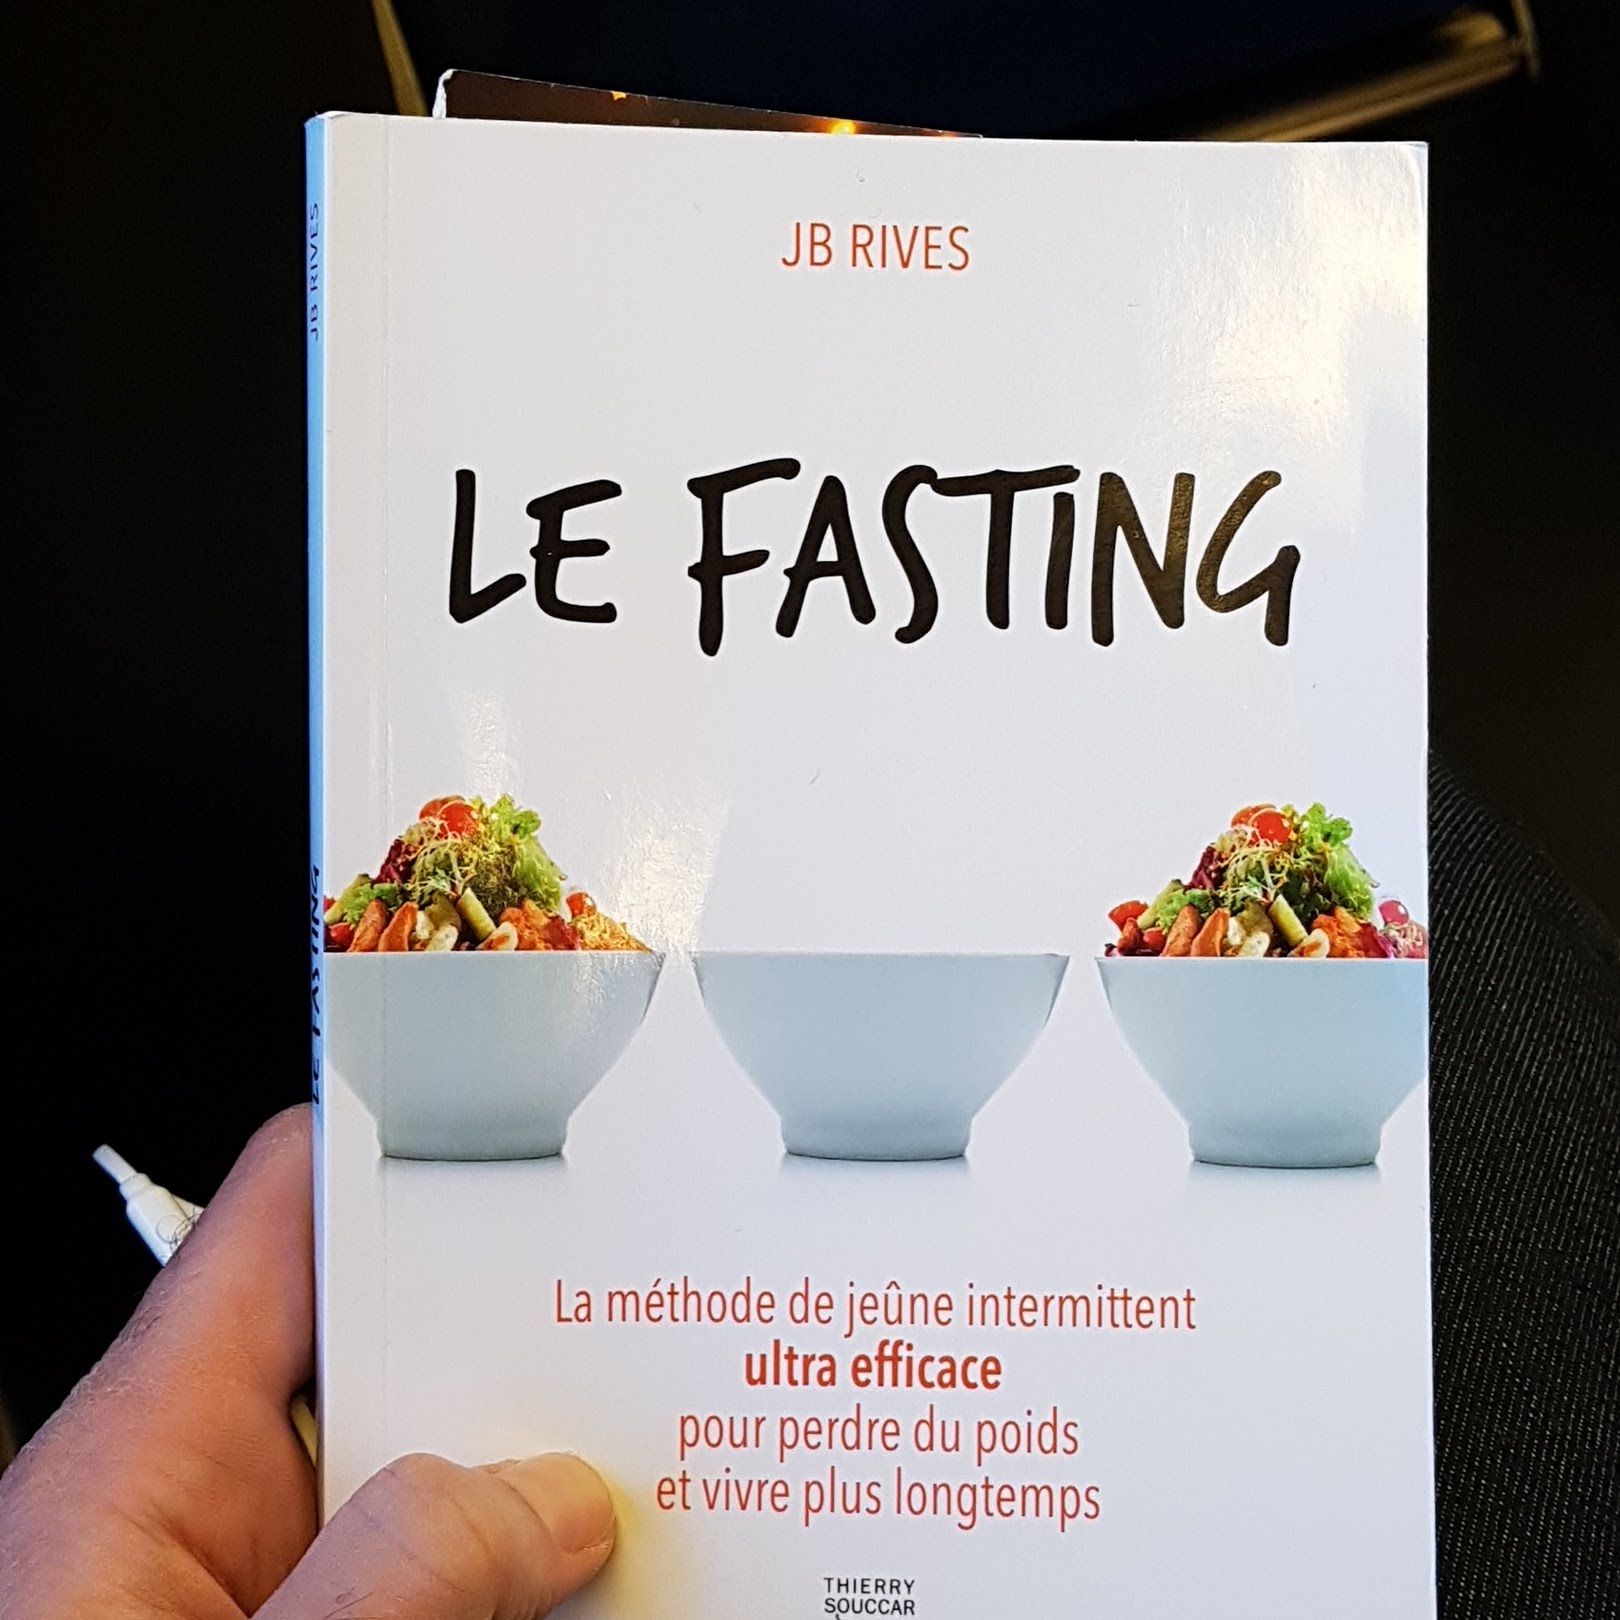 La fasting